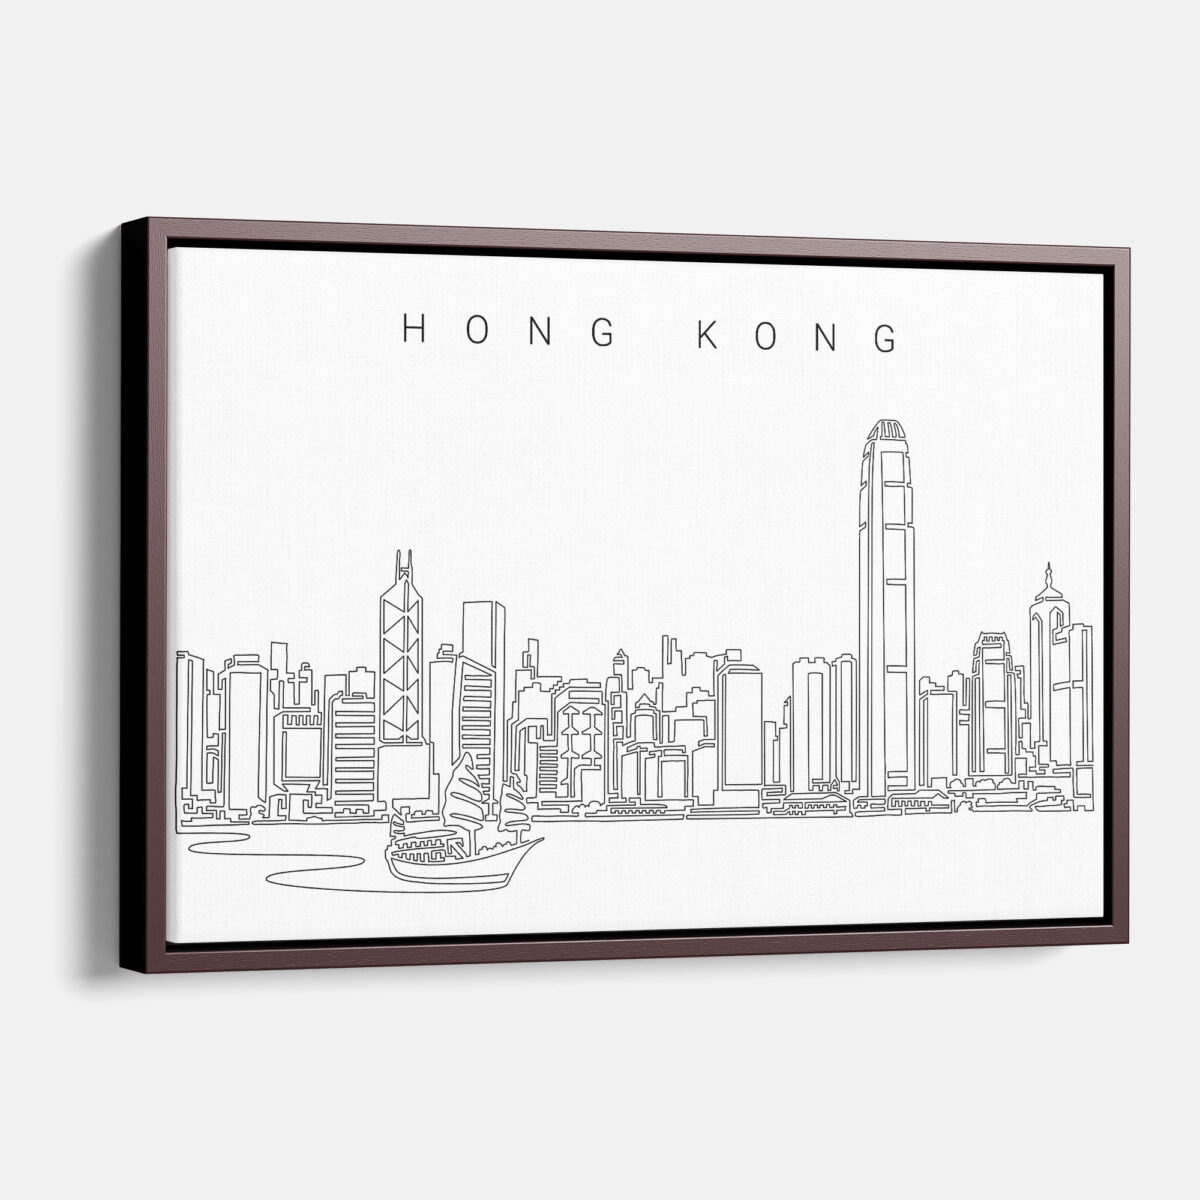 Framed Hong Kong Canvas Print - Main - Light